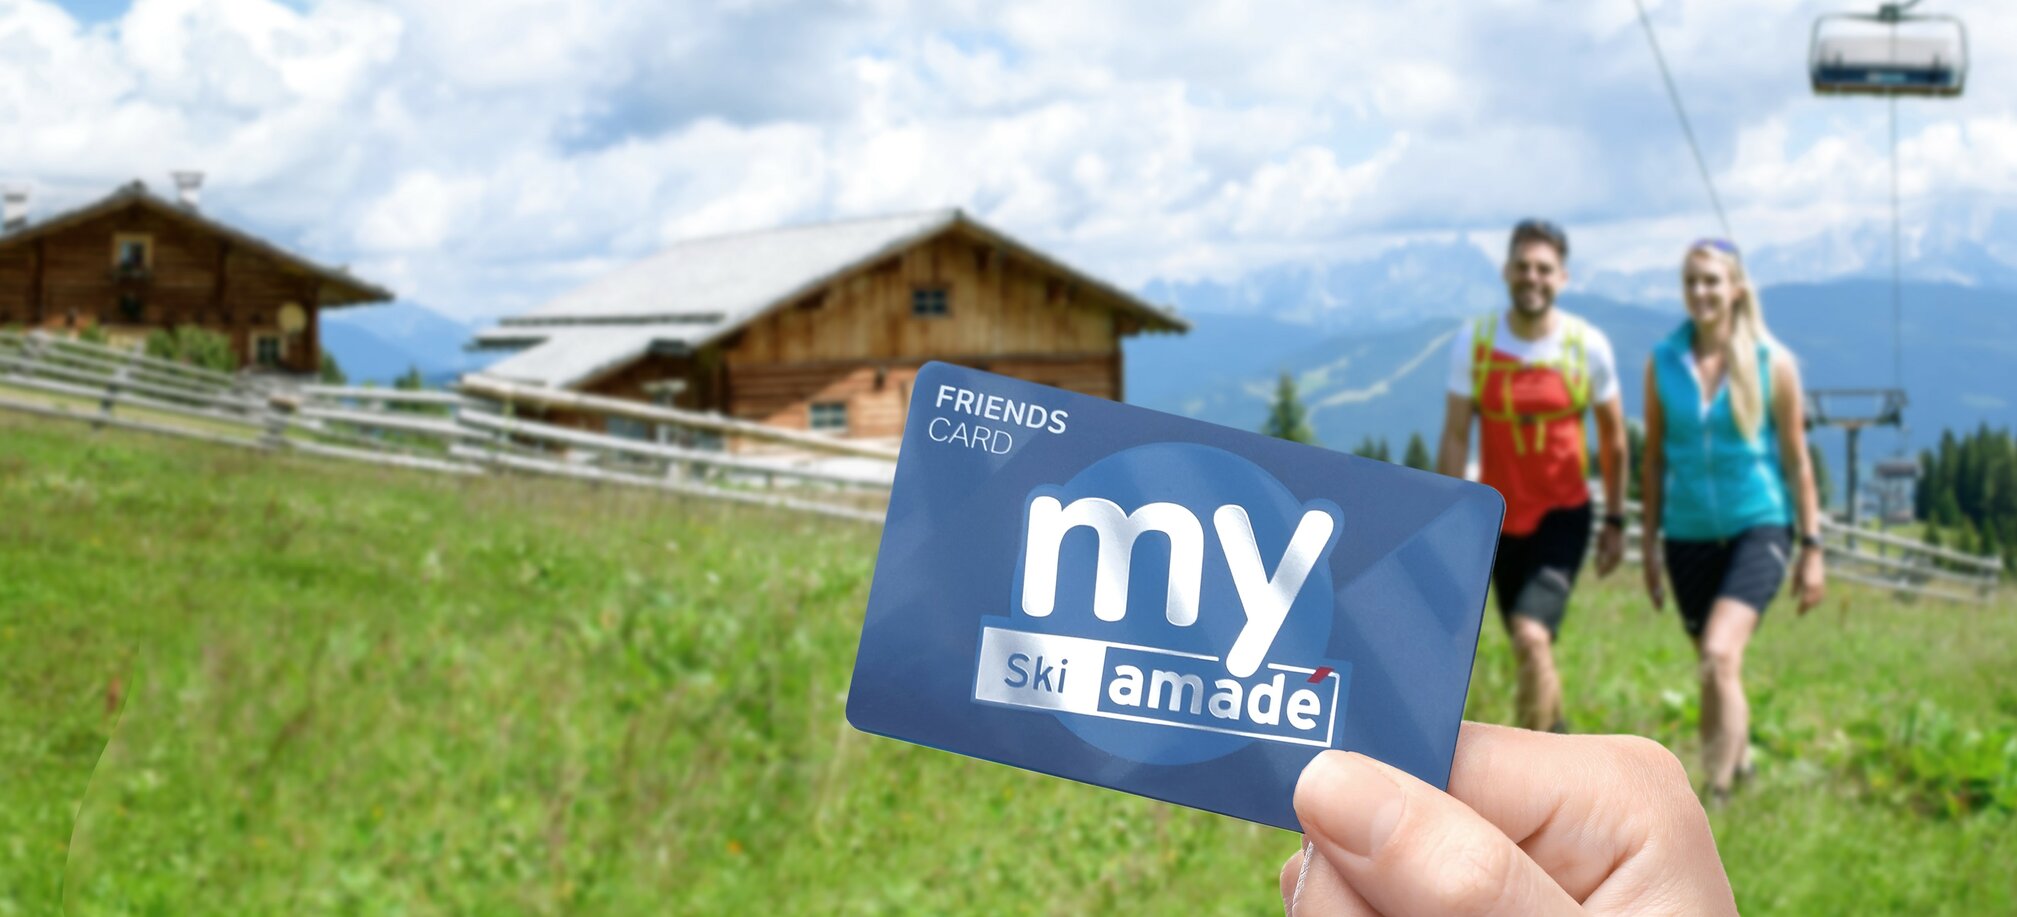 Profitiere auch im Sommer von verschiedenen Angeboten rund um Ski amadé  | © © Ski amadé 